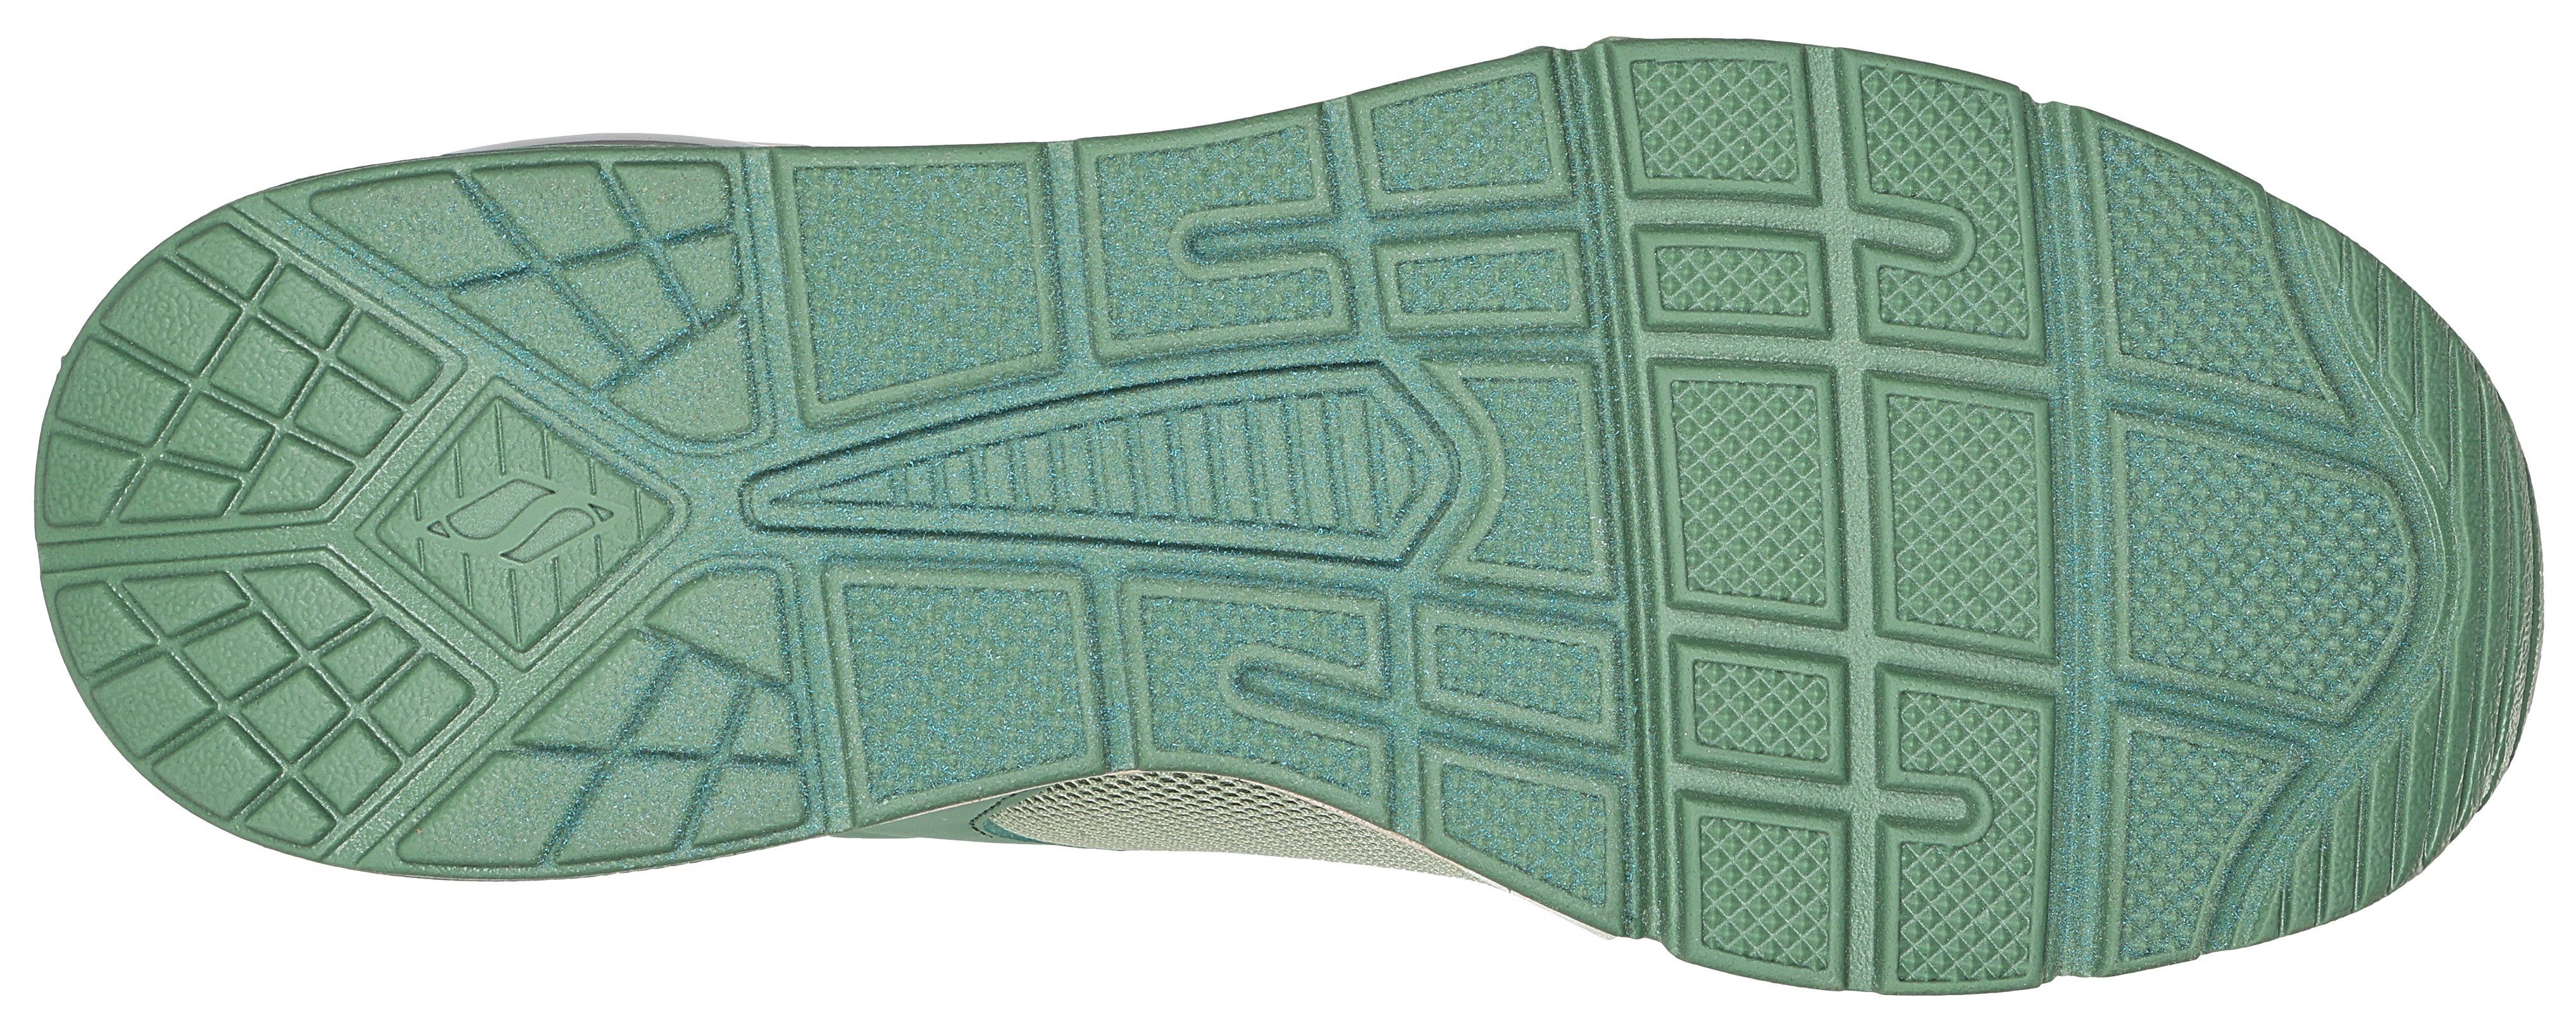 Sneaker mit 2-90'S Luftkammernsohle Skechers mintgrün UNO 2